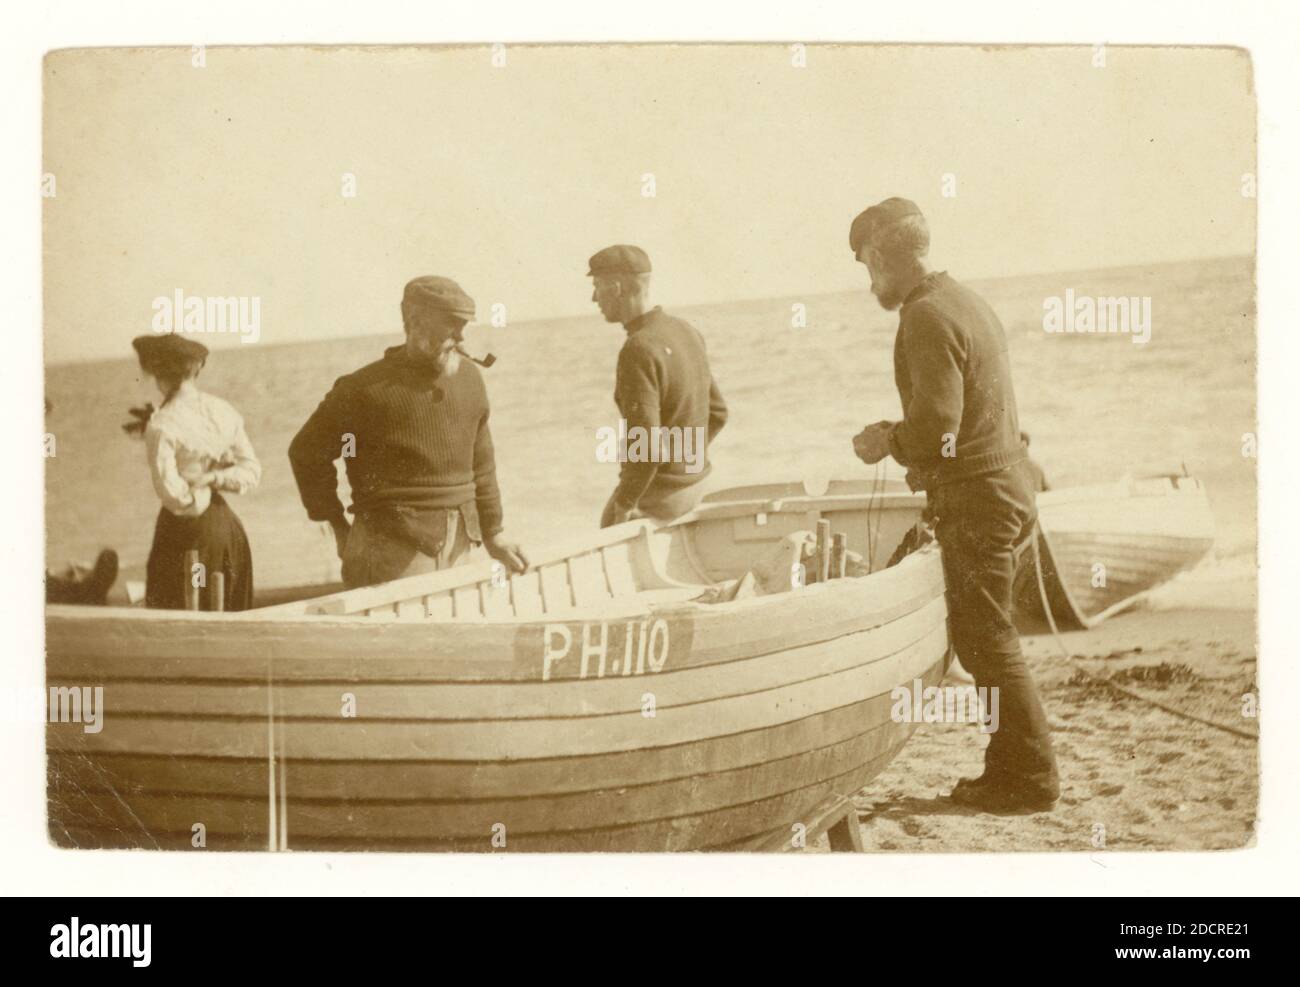 Original début 1900, sépia ton groupe de photographie de pêcheurs à côté de leurs bateaux qui sont tirés vers le haut sur la côte, se préparant à aller en mer, peut-être la pêche en ligne, enregistré à Plymouth sous le nom pH 110, Devon, Royaume-Uni vers 1910 Banque D'Images